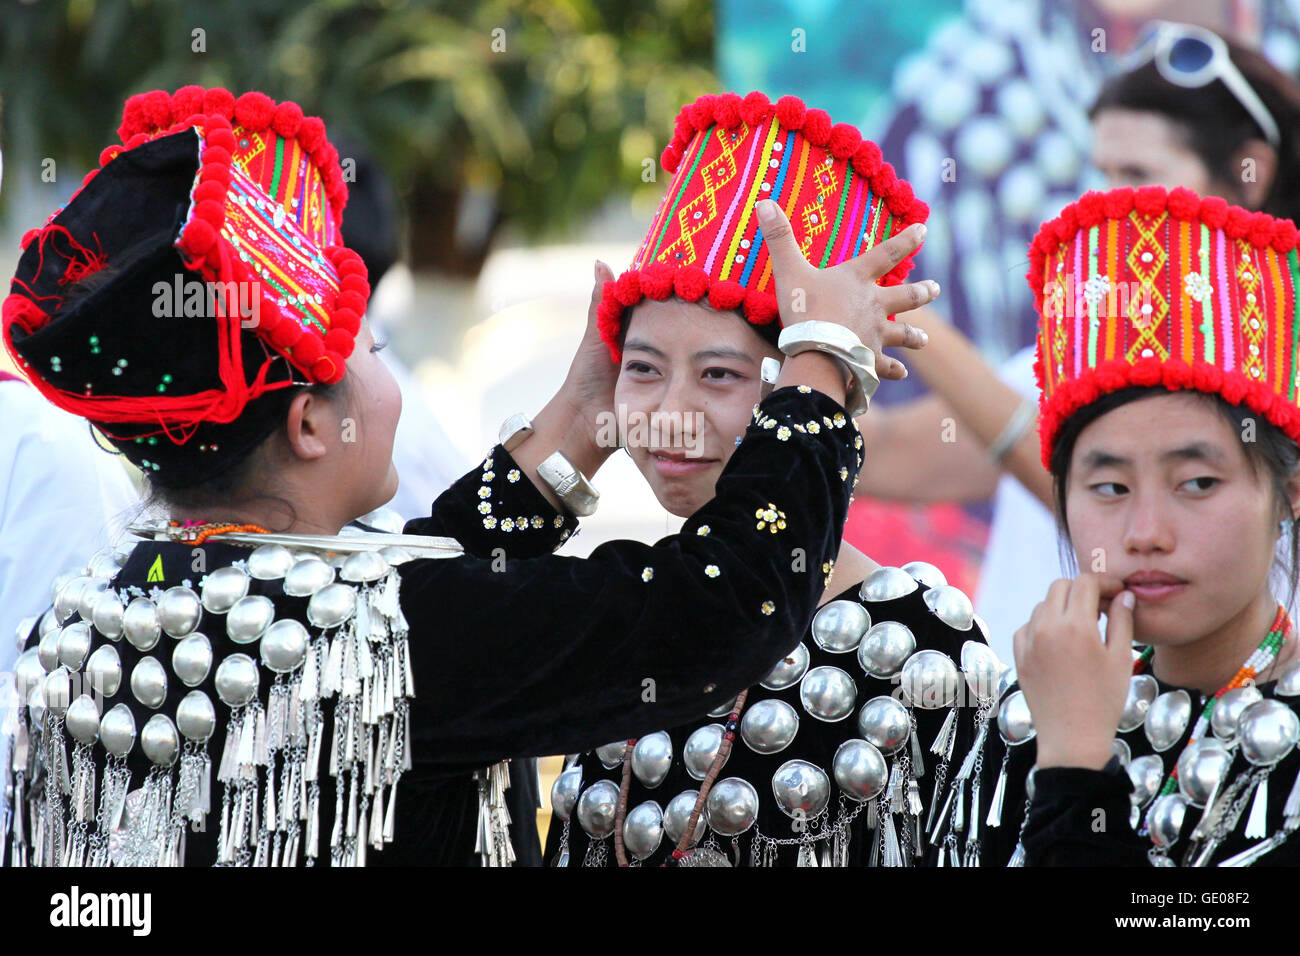 Les birmanes non identifiés la préparation de costumes d'un spectacle pendant le Festival Manaw 07 Janvier, 2010. Banque D'Images